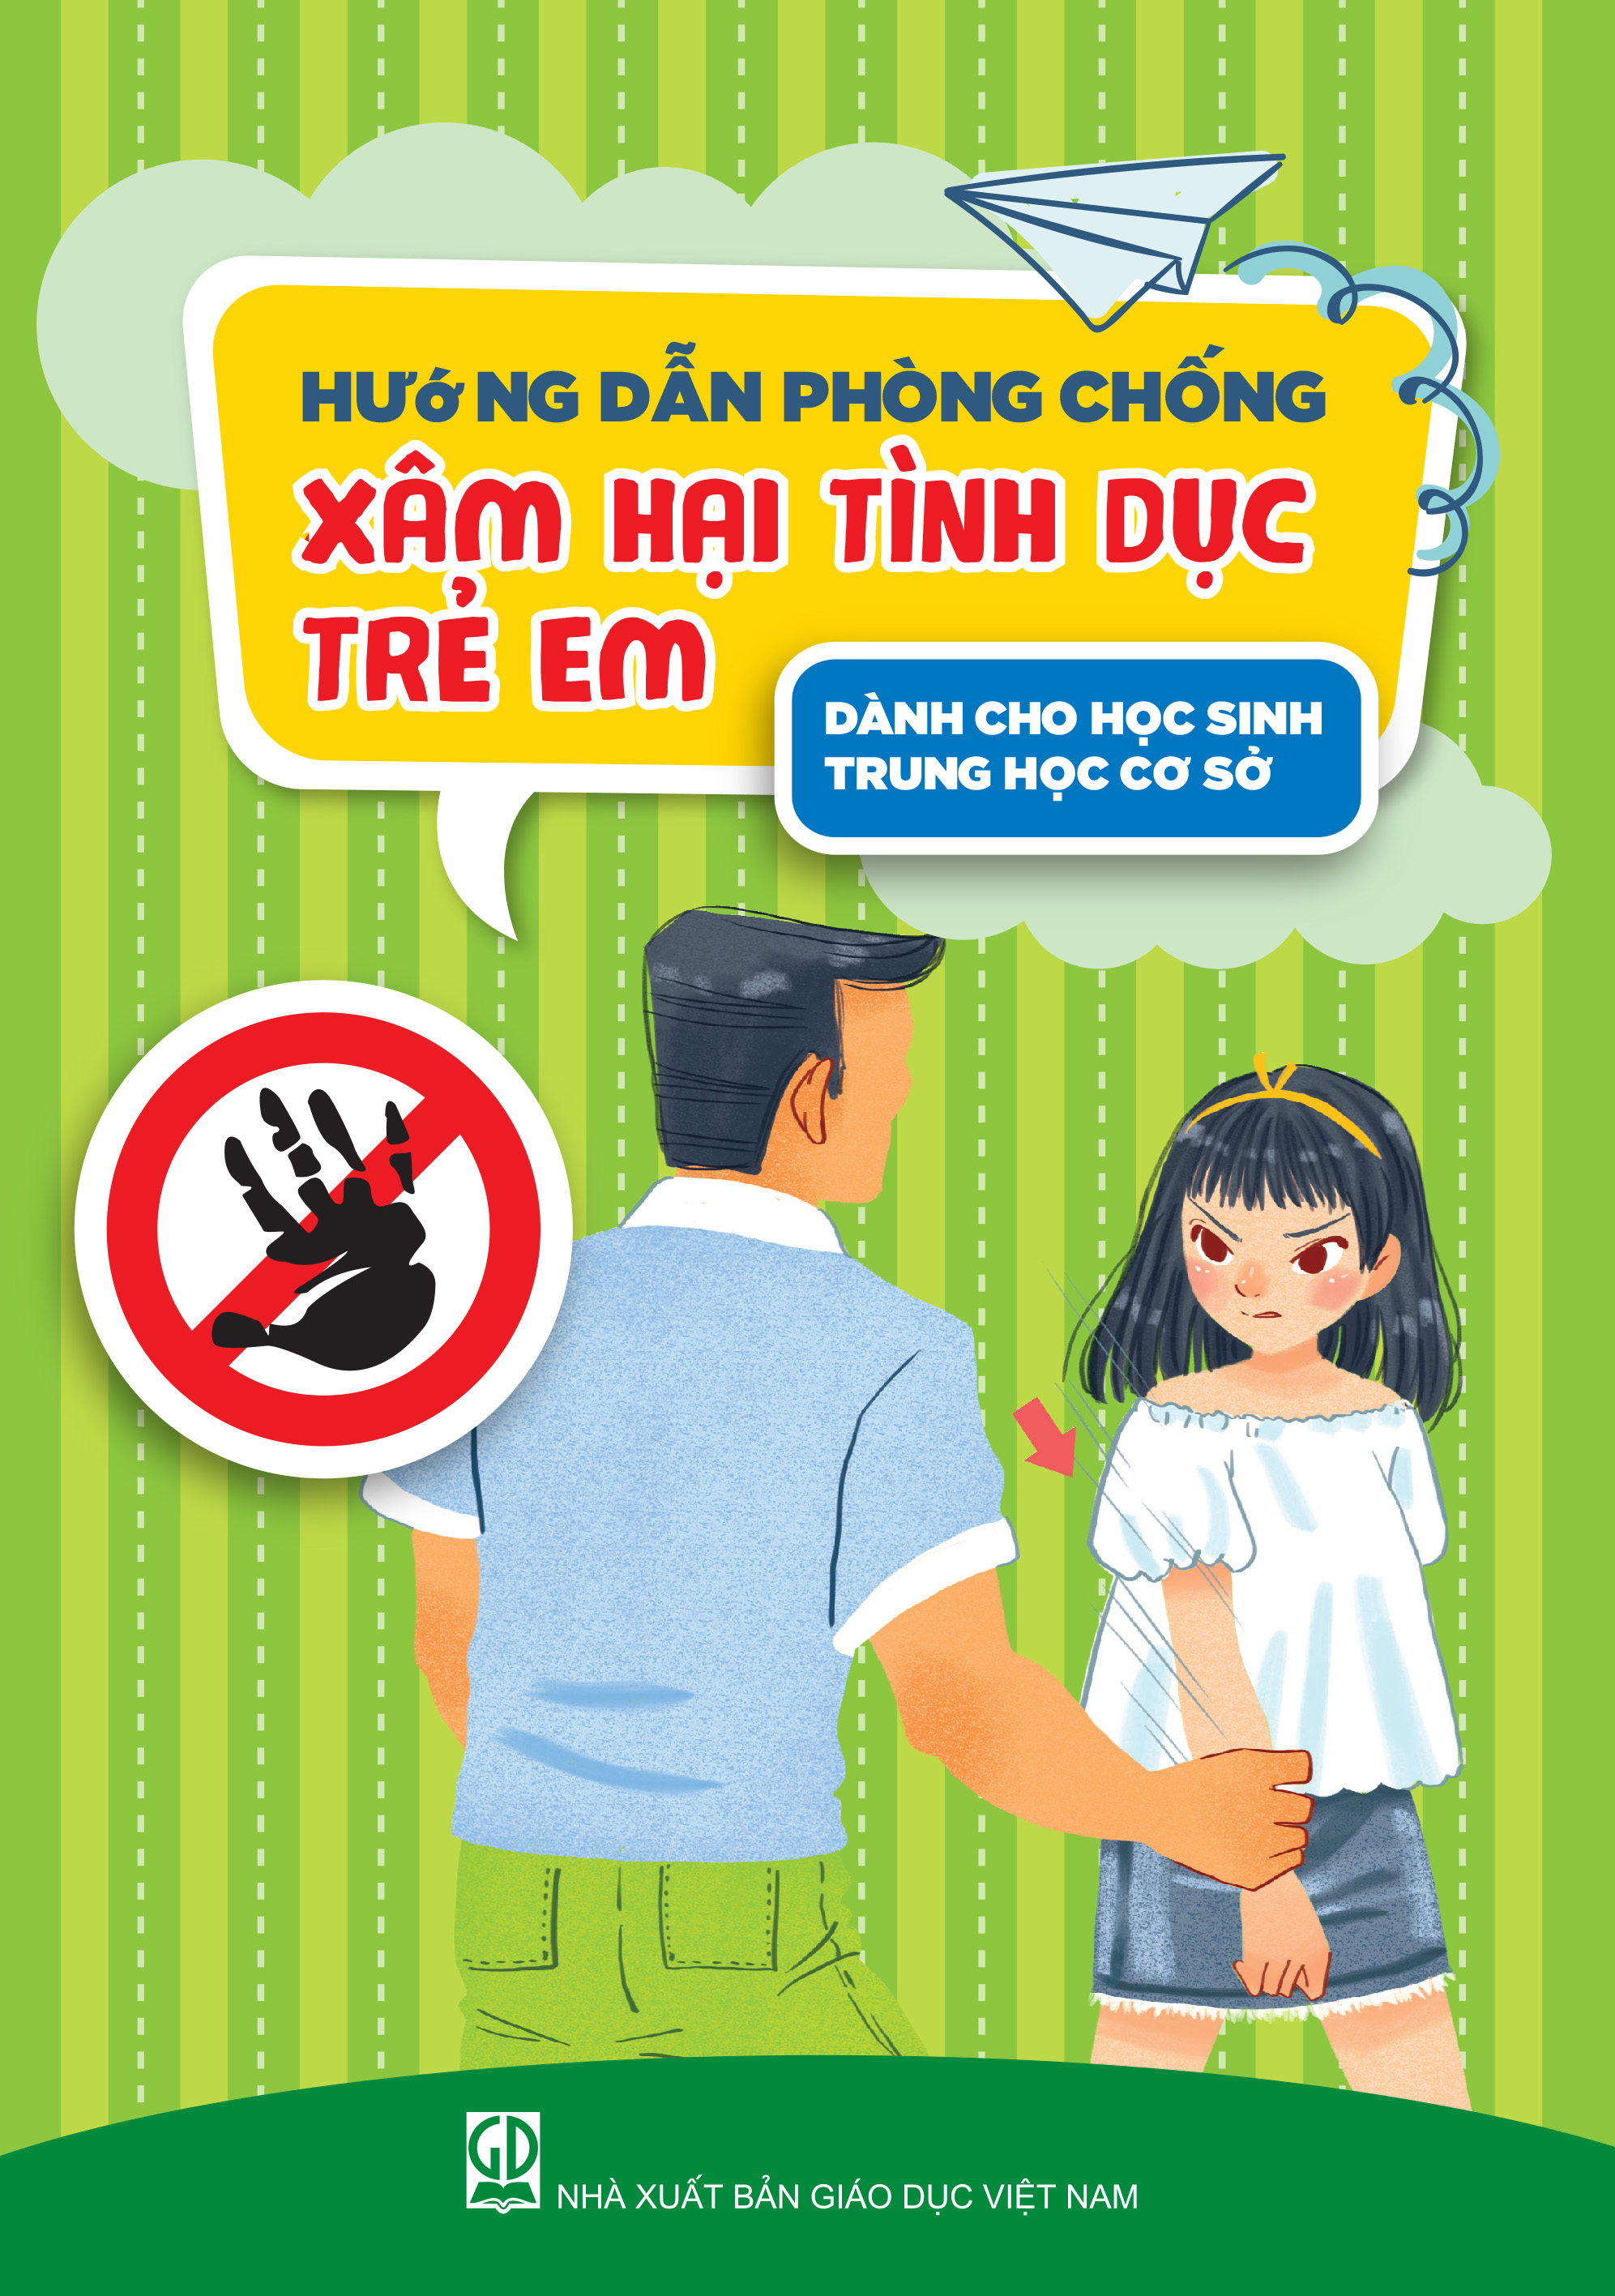 Hướng dẫn phòng chống xâm hại tình dục trẻ em dành cho học sinh (Dành cho học sinh Trung học cơ sở)